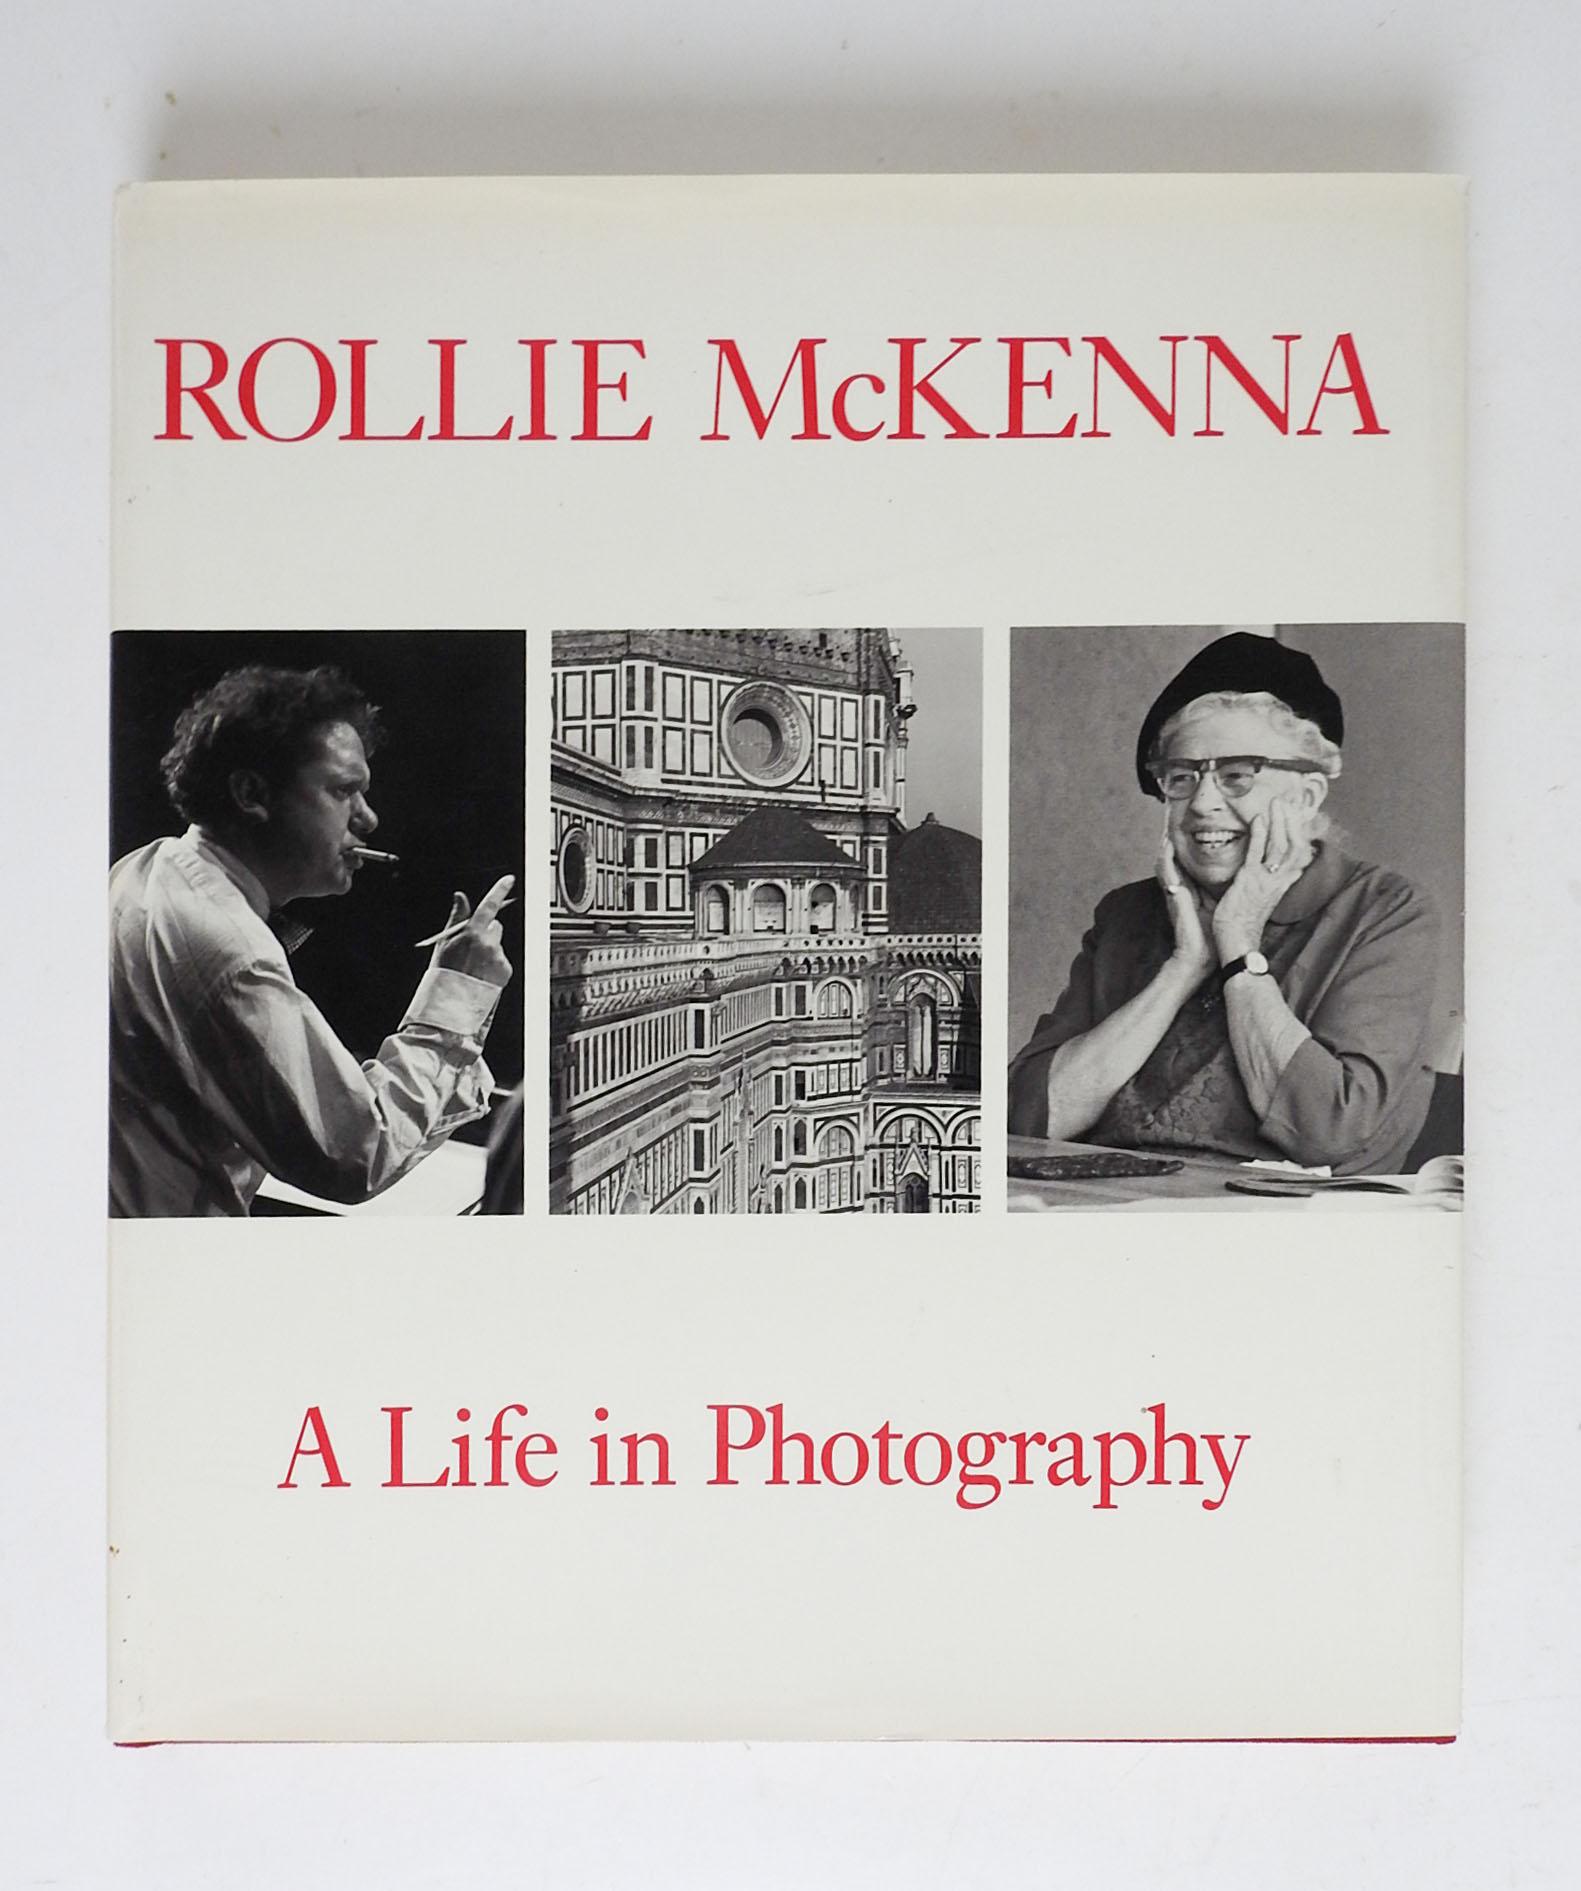 Rollie McKenna A Life In Photography at Vassar College.